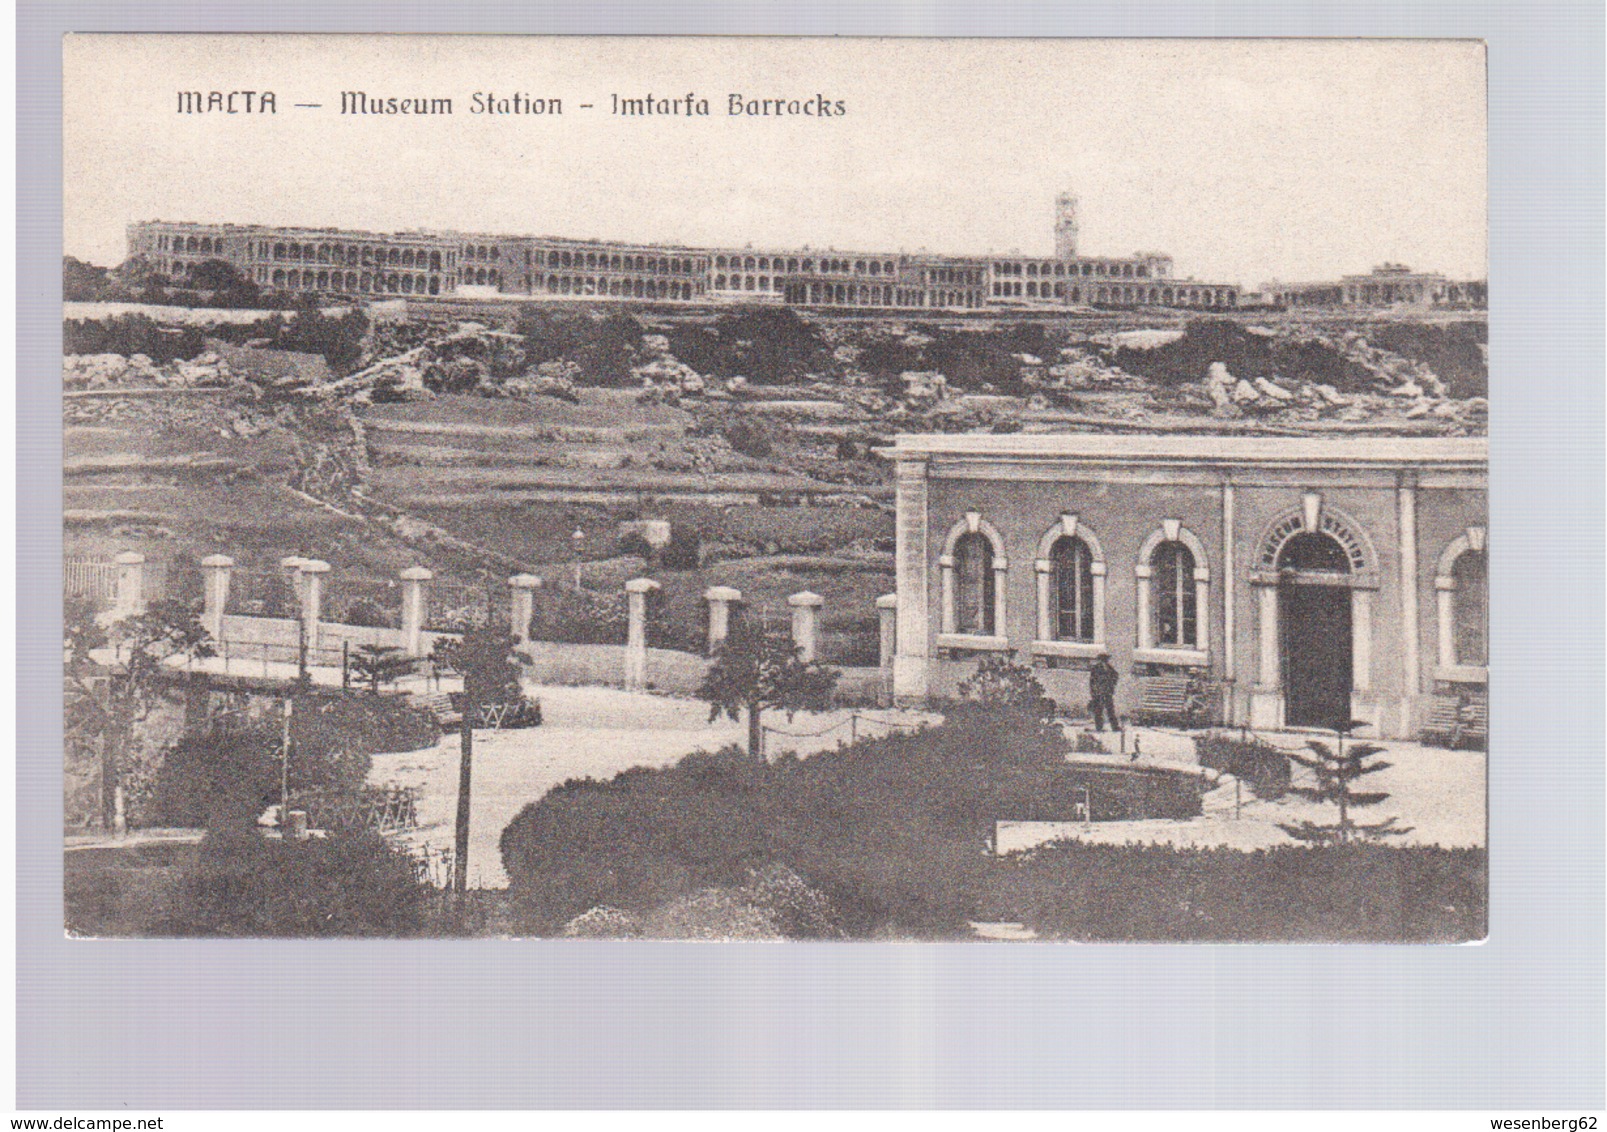 MALTA  Museum Station Imtarfa Barracks Ca 1920 Old Postcard - Malta